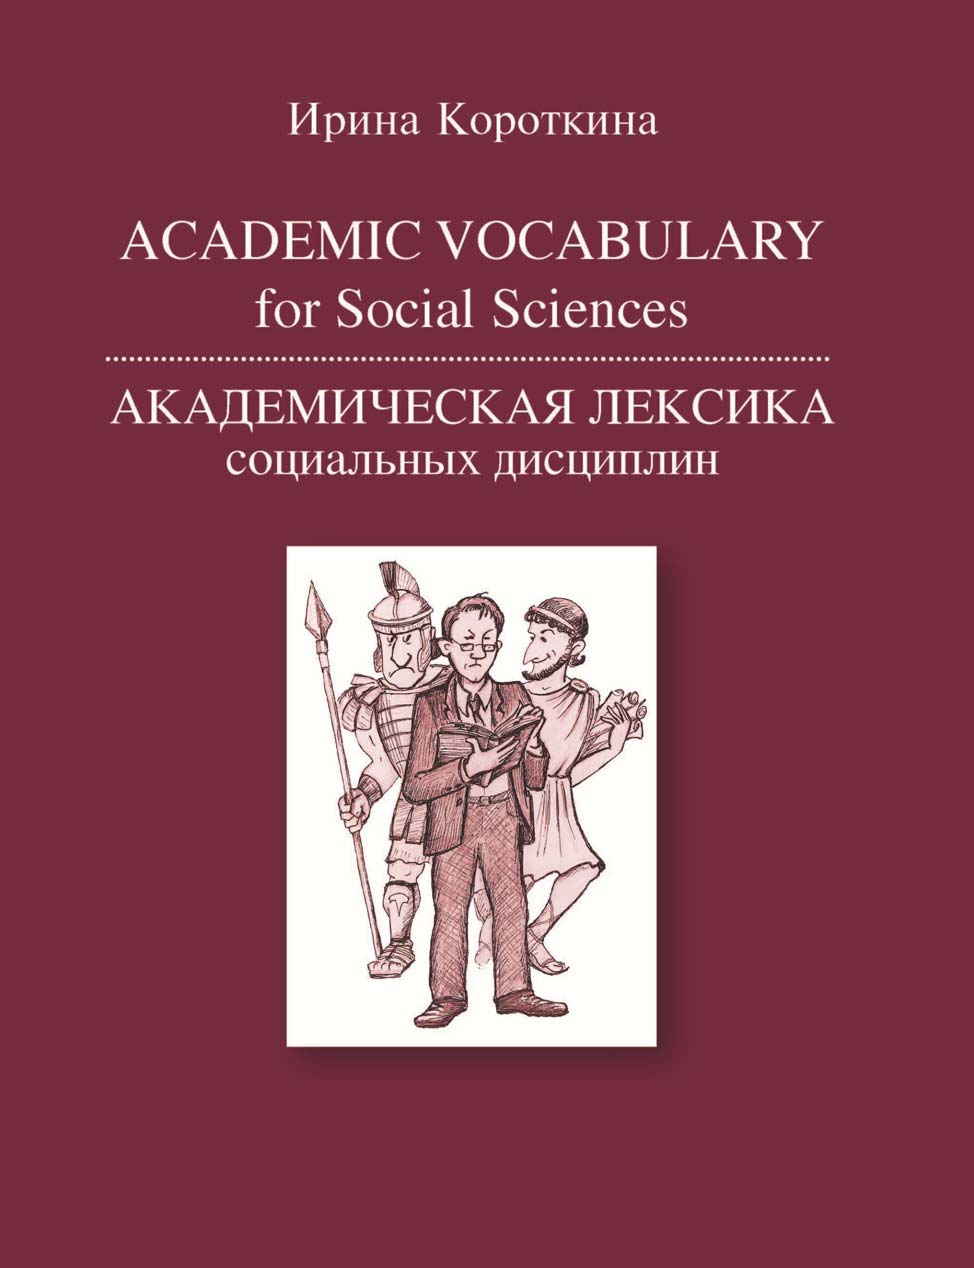 Academic Vocabulary for Social Sciences /Академическая лексика социальных дисциплин